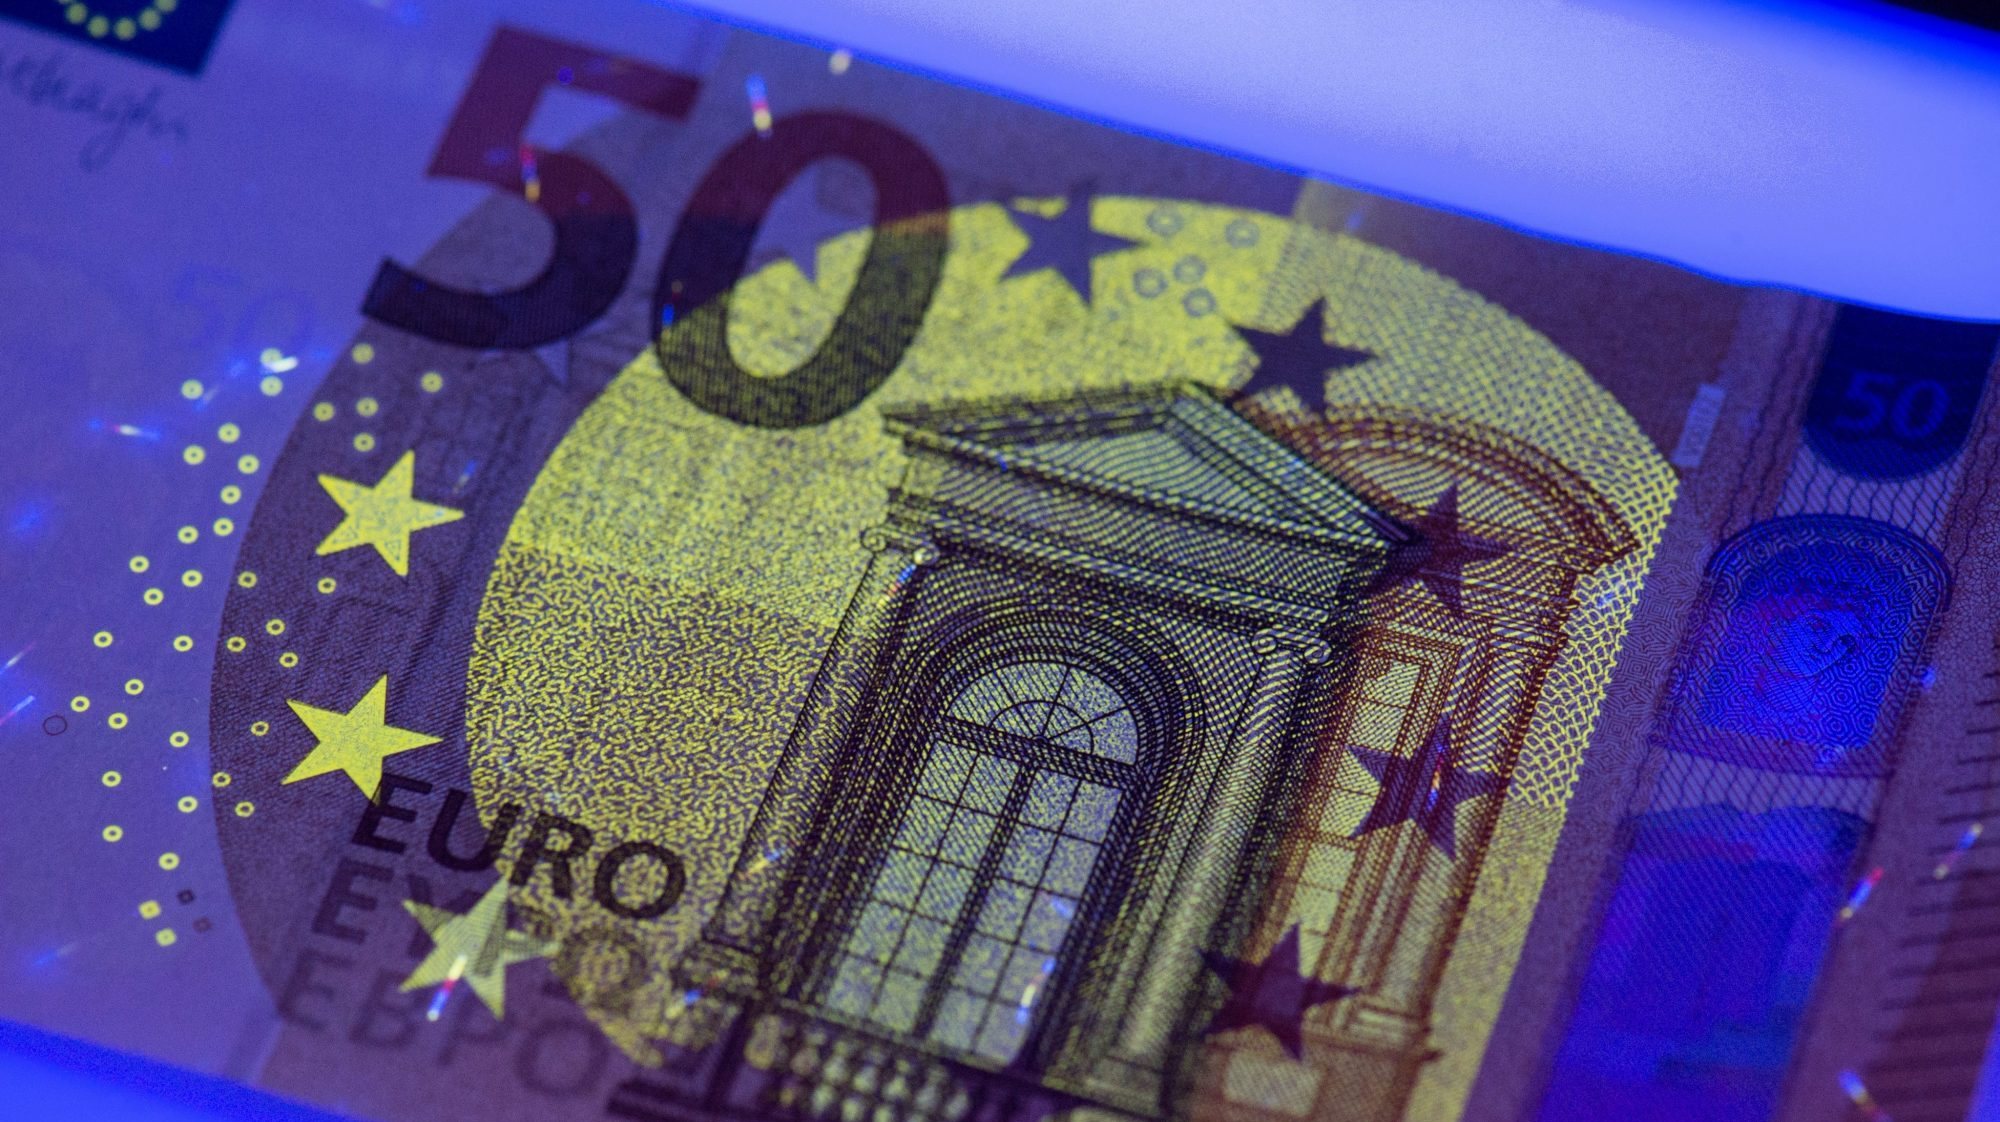 Apresentação da nova note de 50 Euros no Bundesbank em Frankfurt, Alemanha. BORIS ROESSLER/LUSA